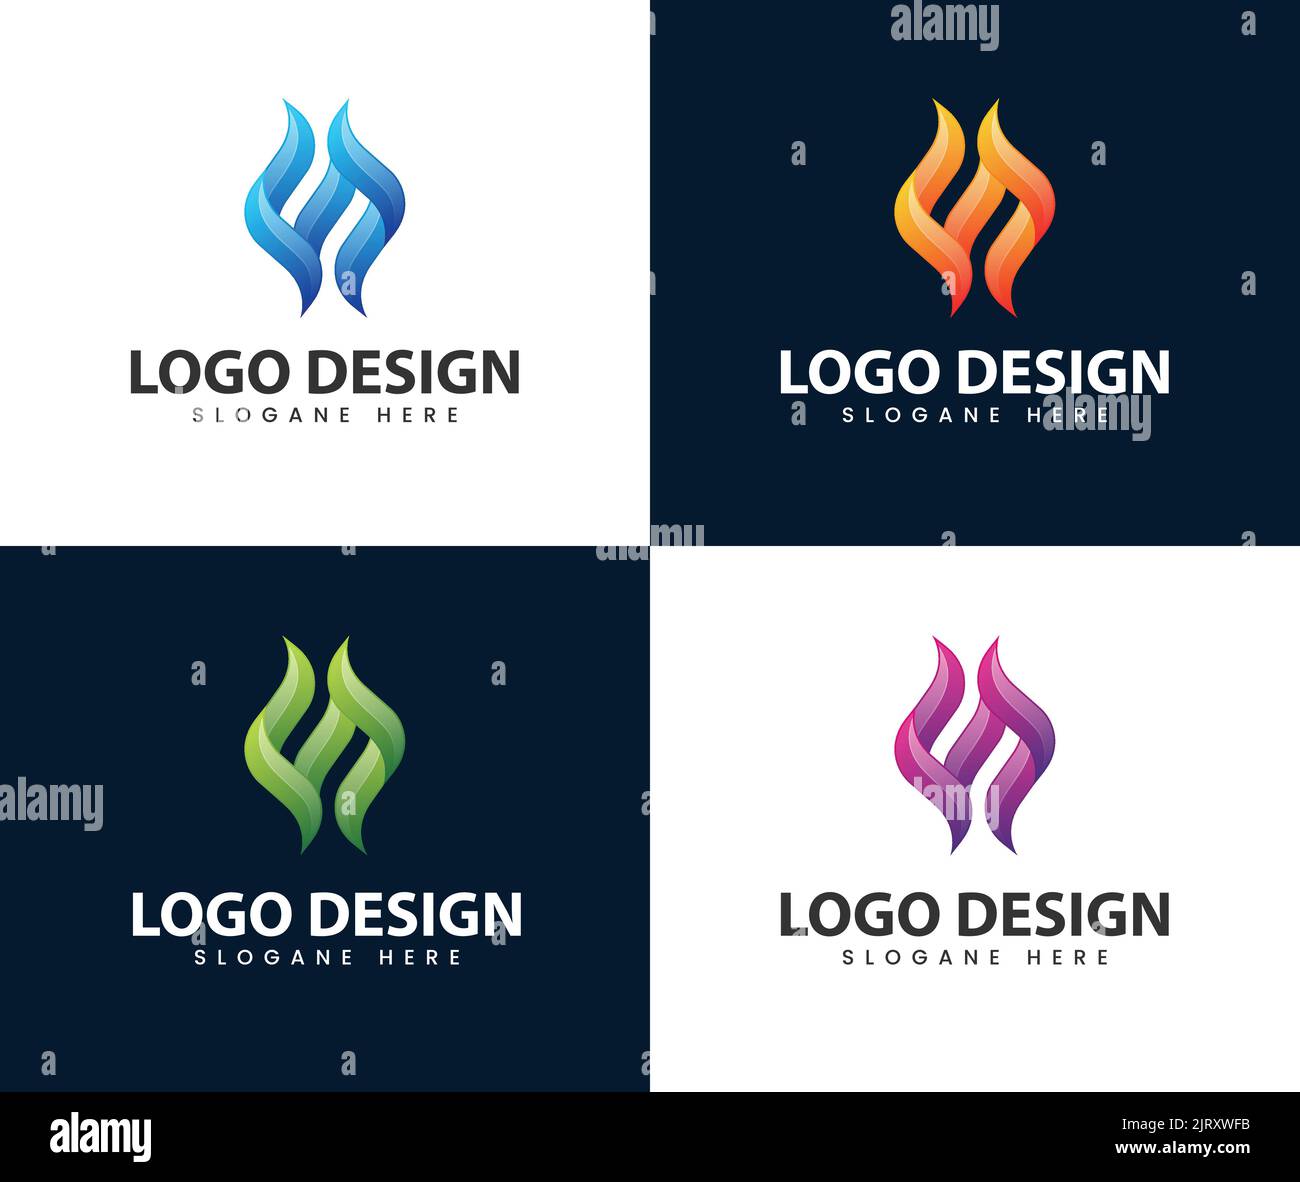 Abstract creative fire flame logo design. fire flame logo vector illustration Stock Vector